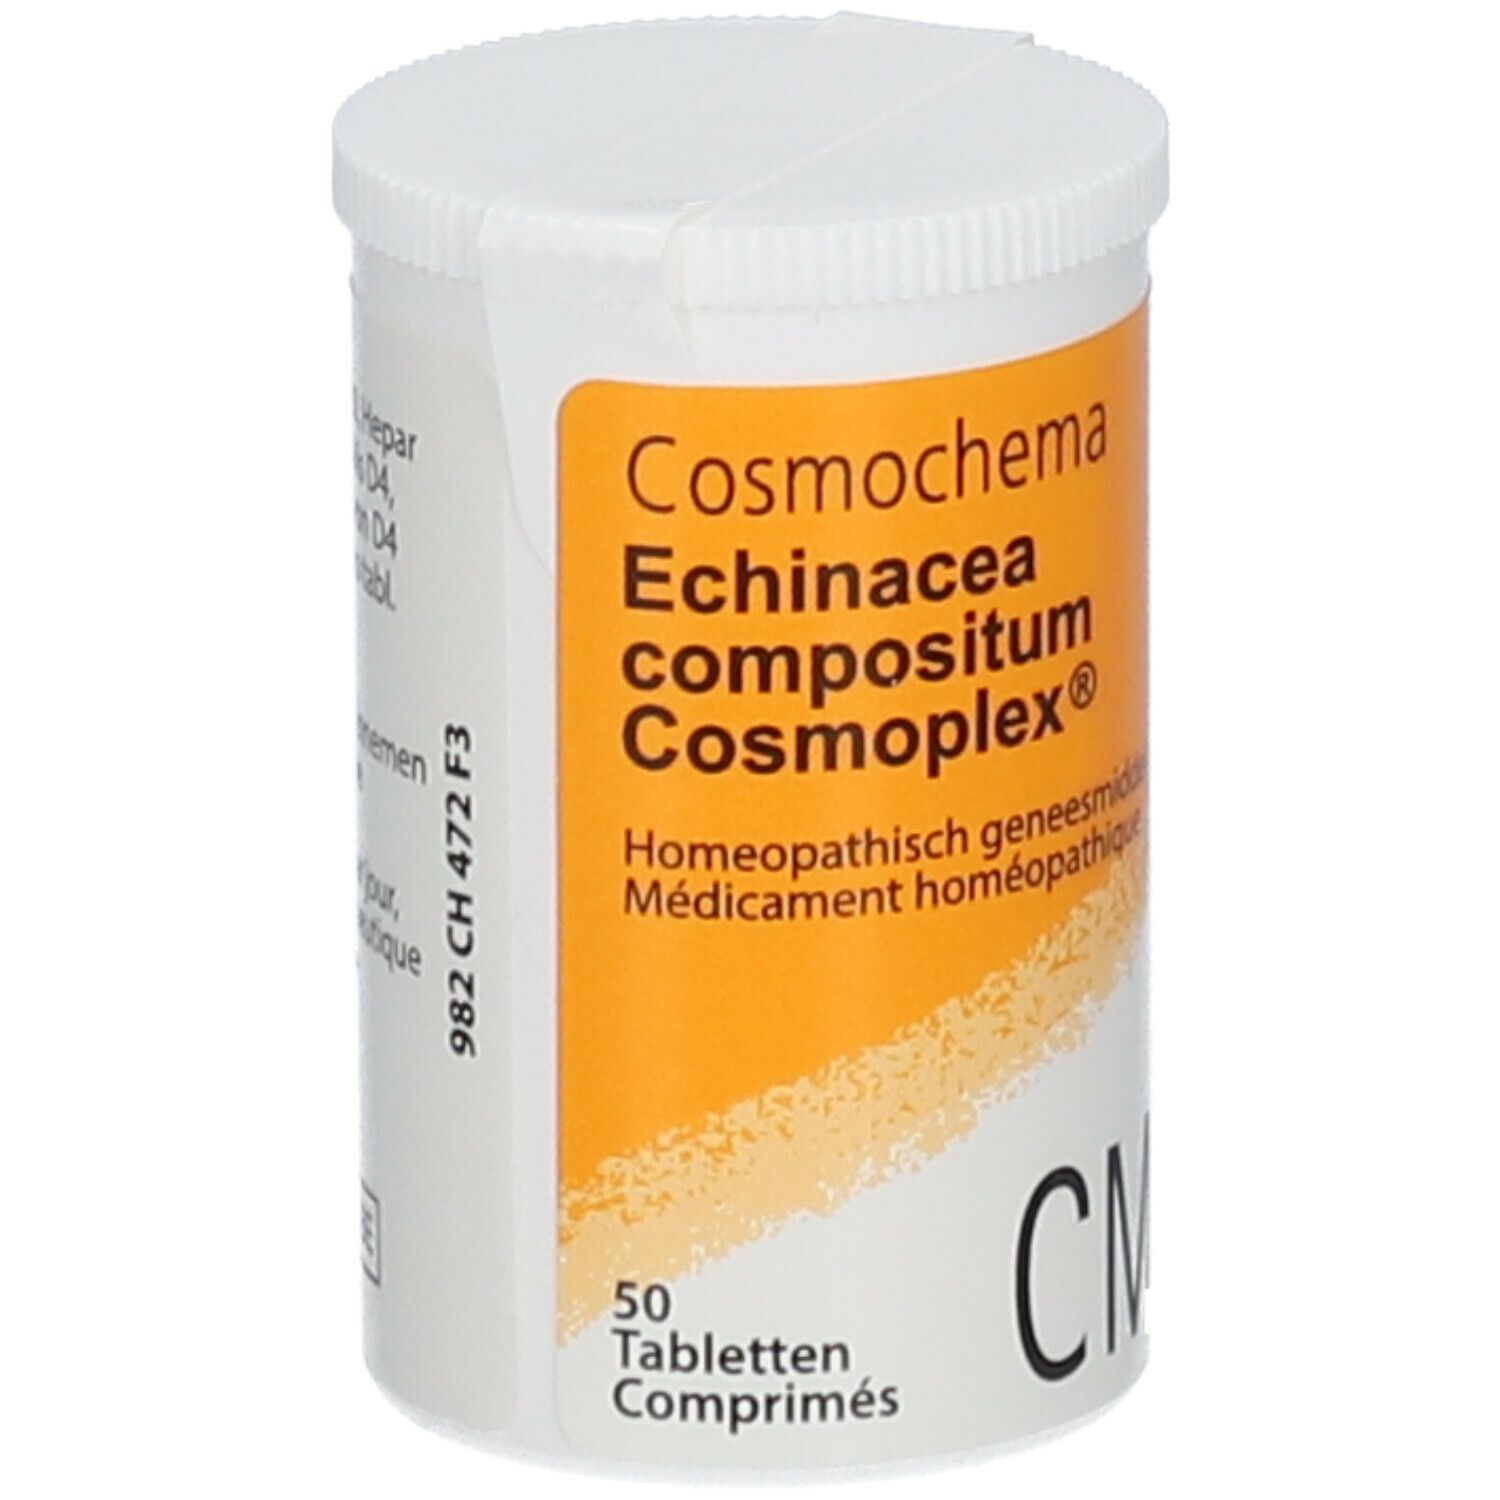 Heel Echinacea Composositum Cosmoplex